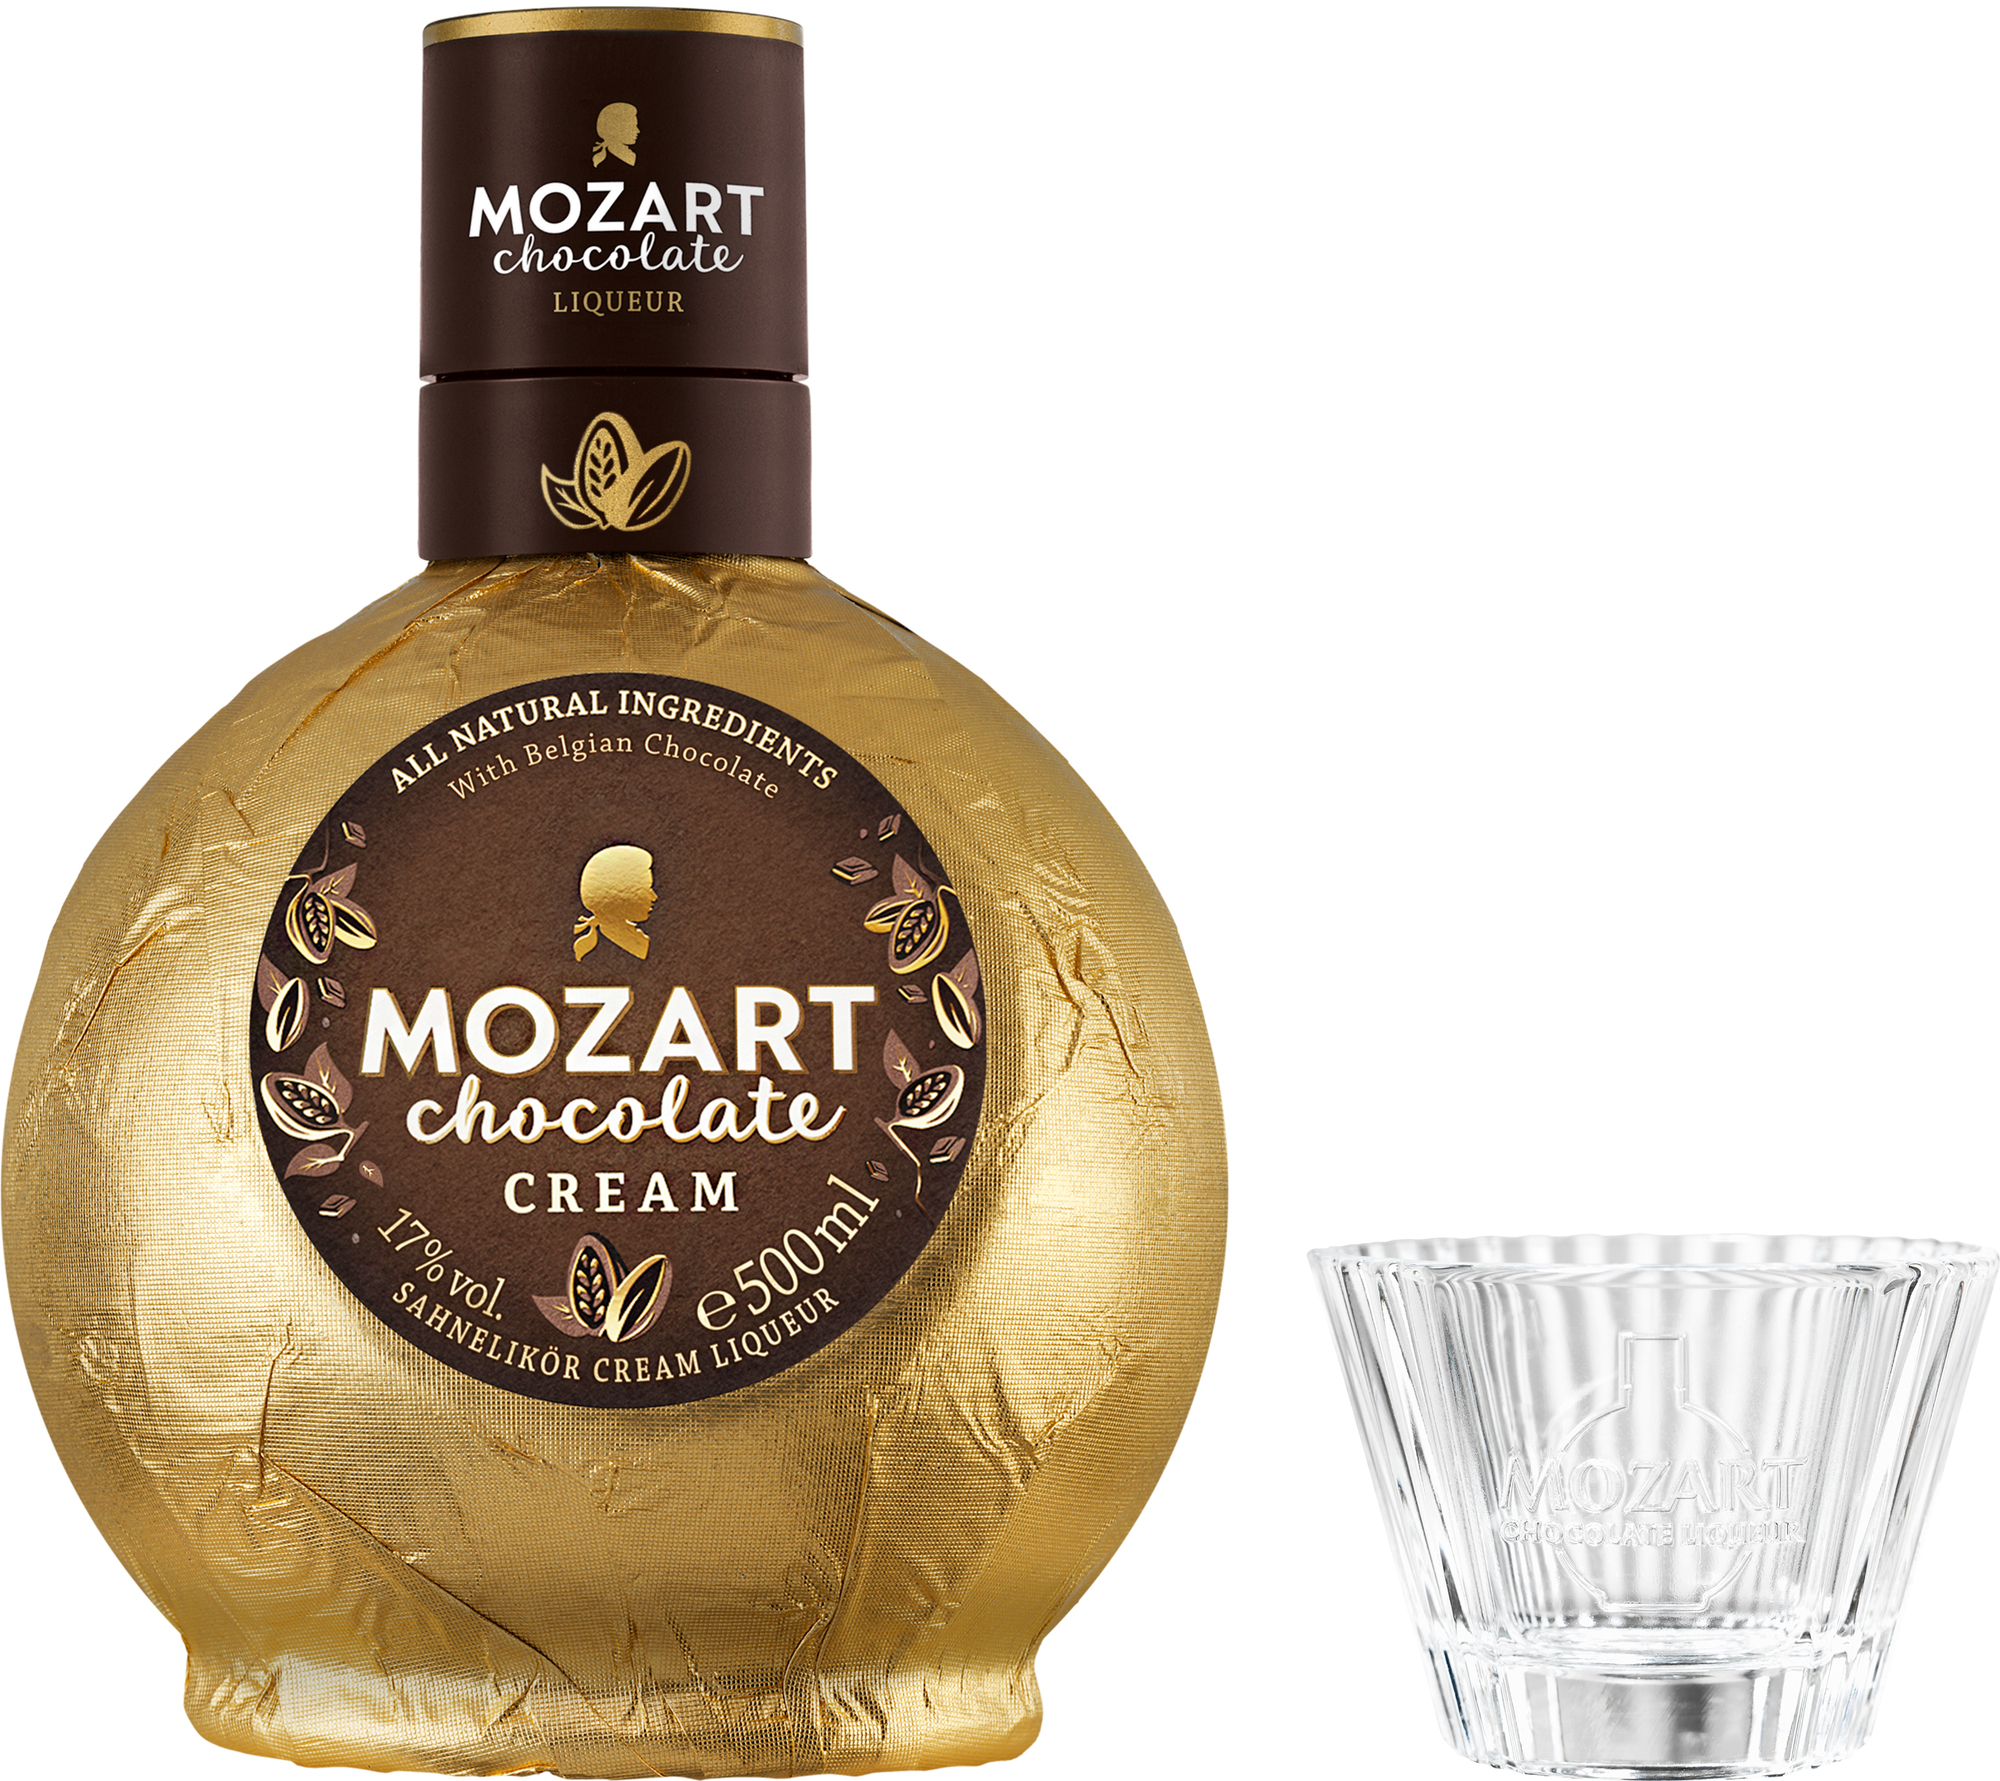 Mozart Chocolate Cream + Cupcake sklenička 17% 0,5l (darčekové balenie)